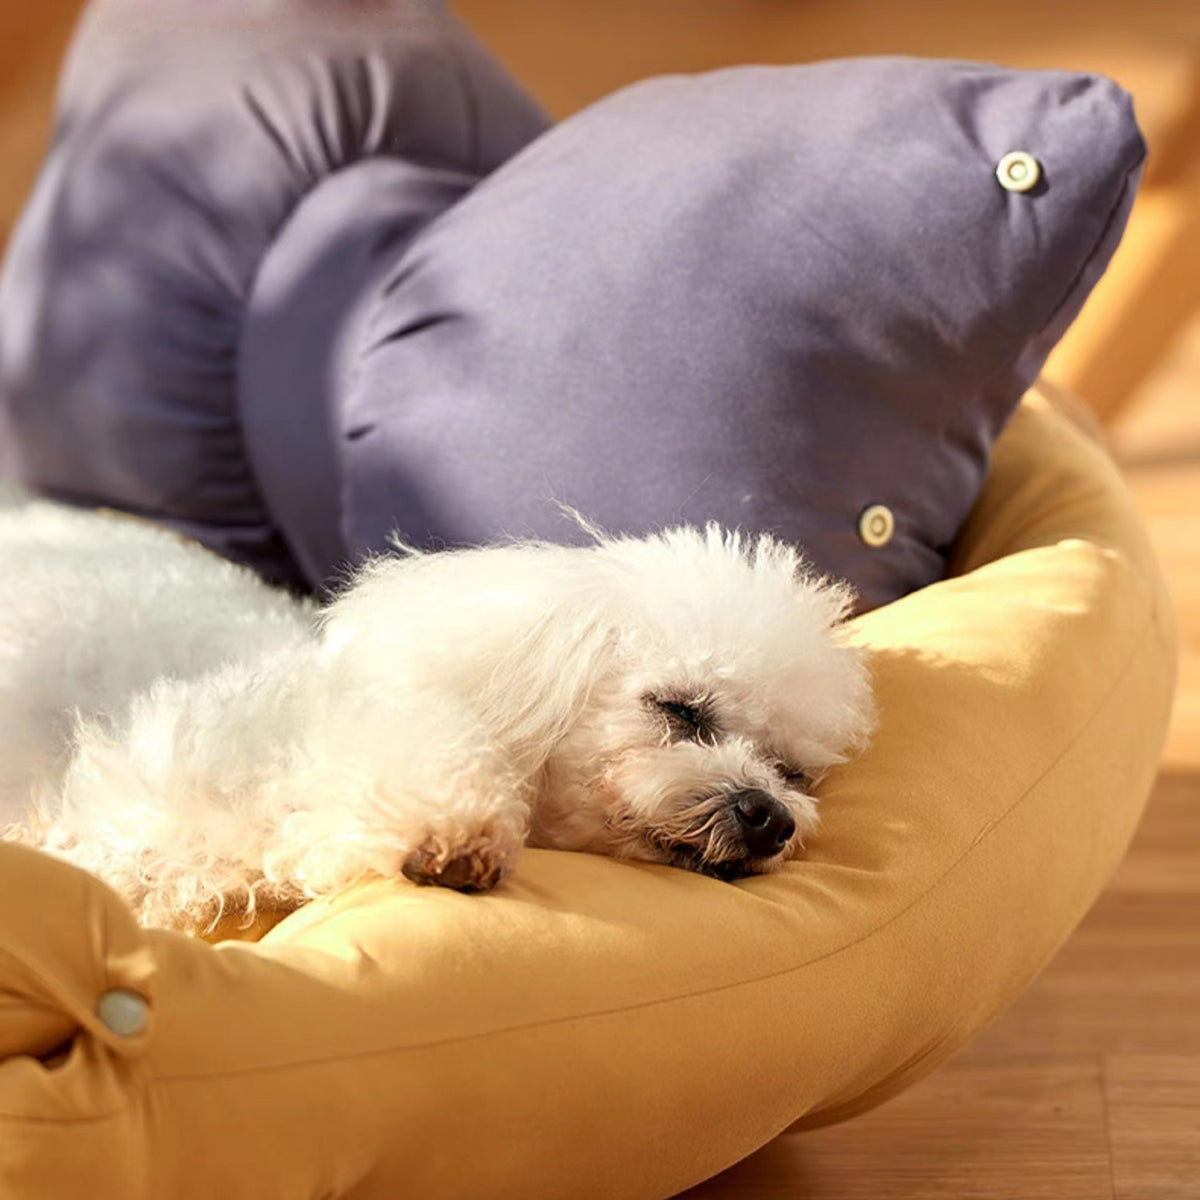 Dogs Nest Cushion Sofa